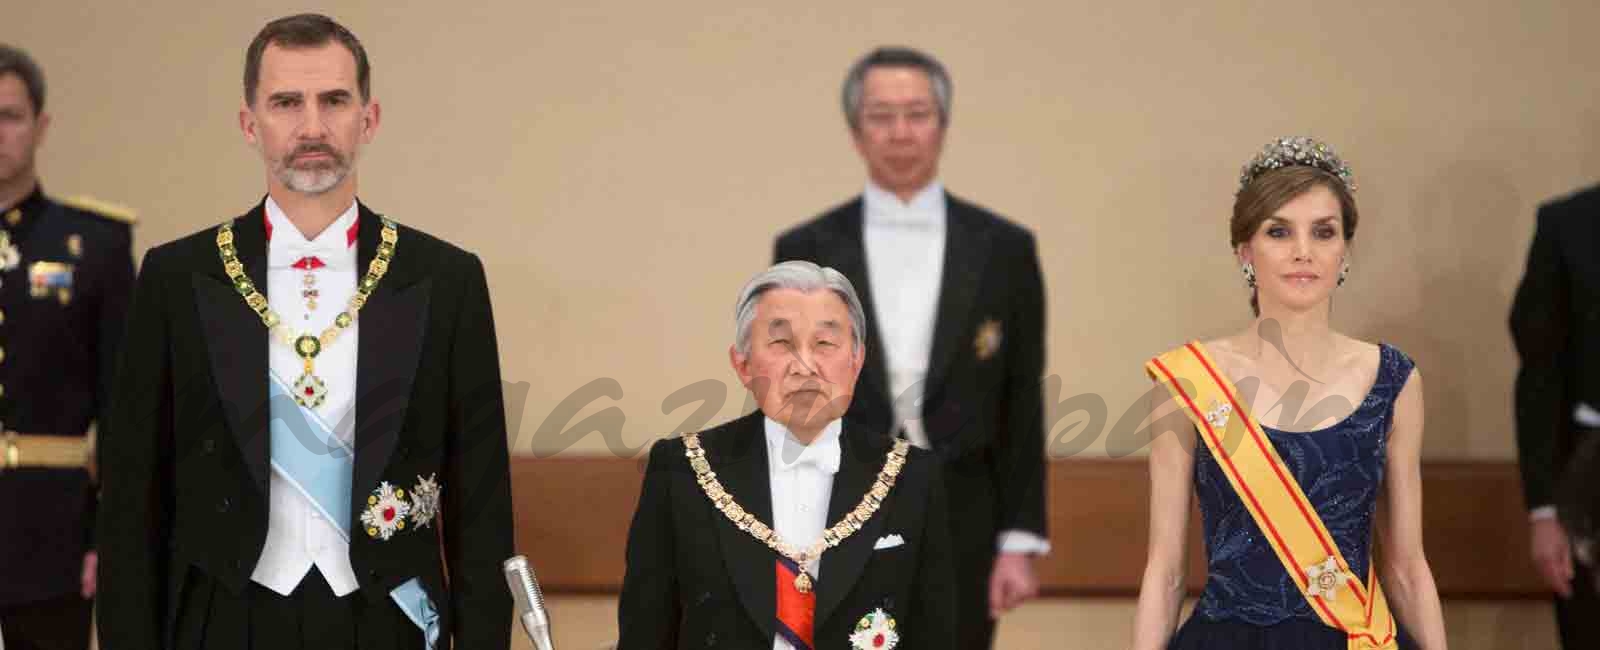 reyes de españa y emperador de japon cena de gala